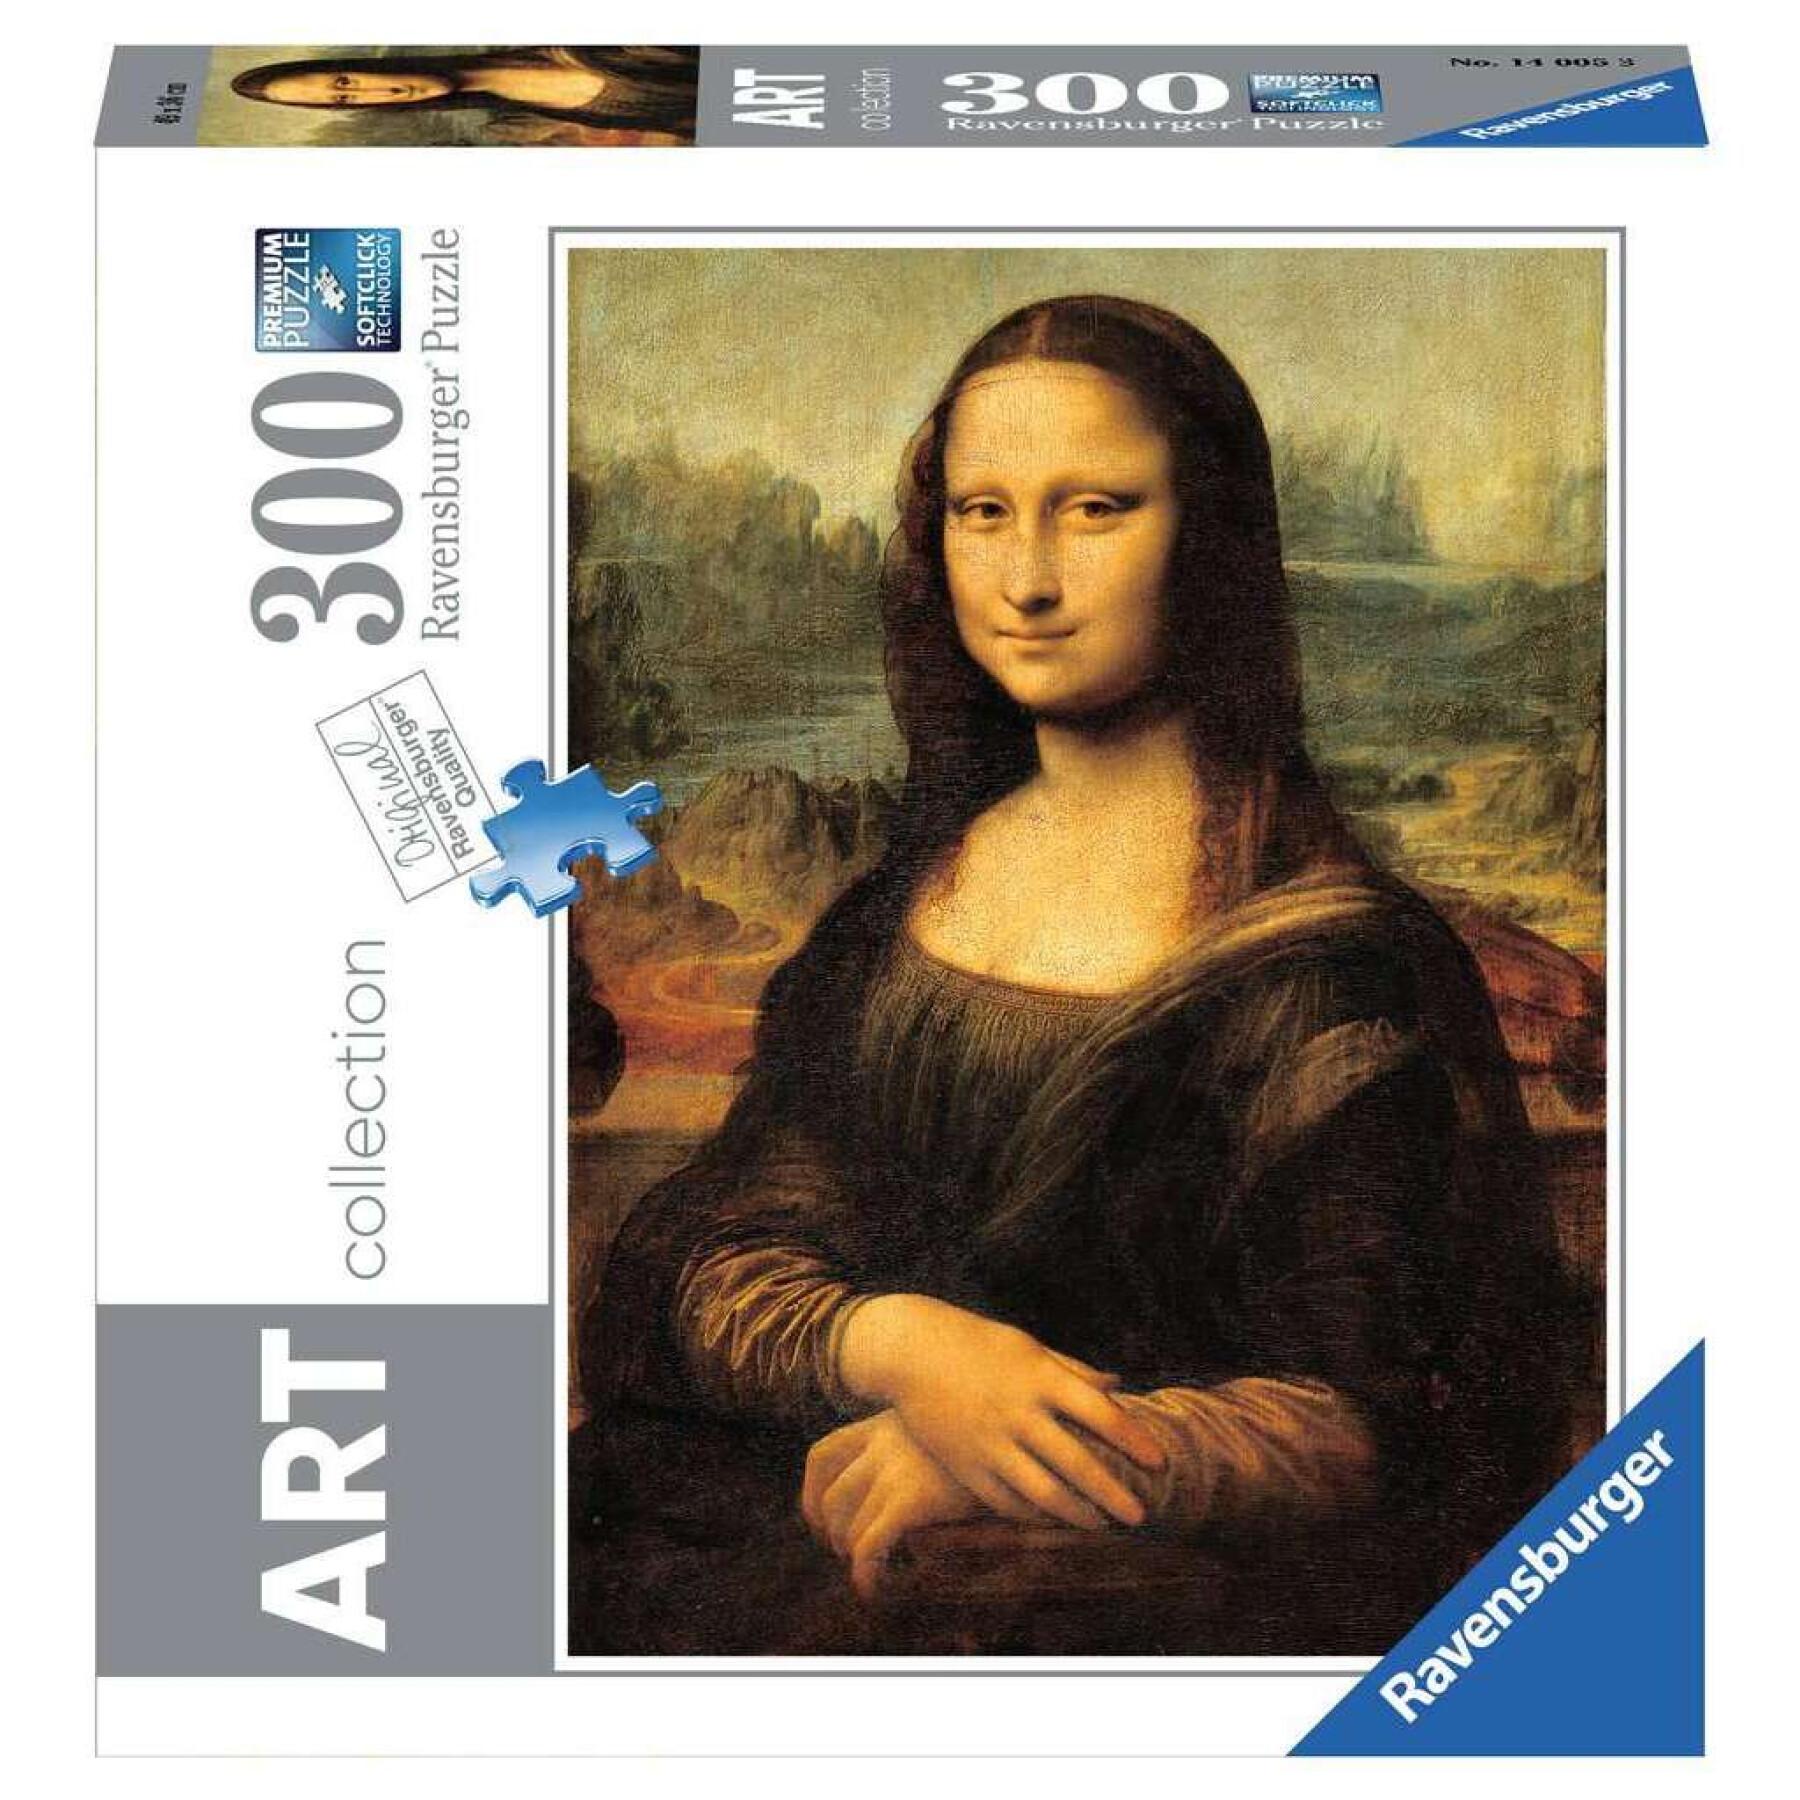 Puzzle 300 piezas colección de arte - Mona Lisa / Leonardo da Vinci Ravensburger